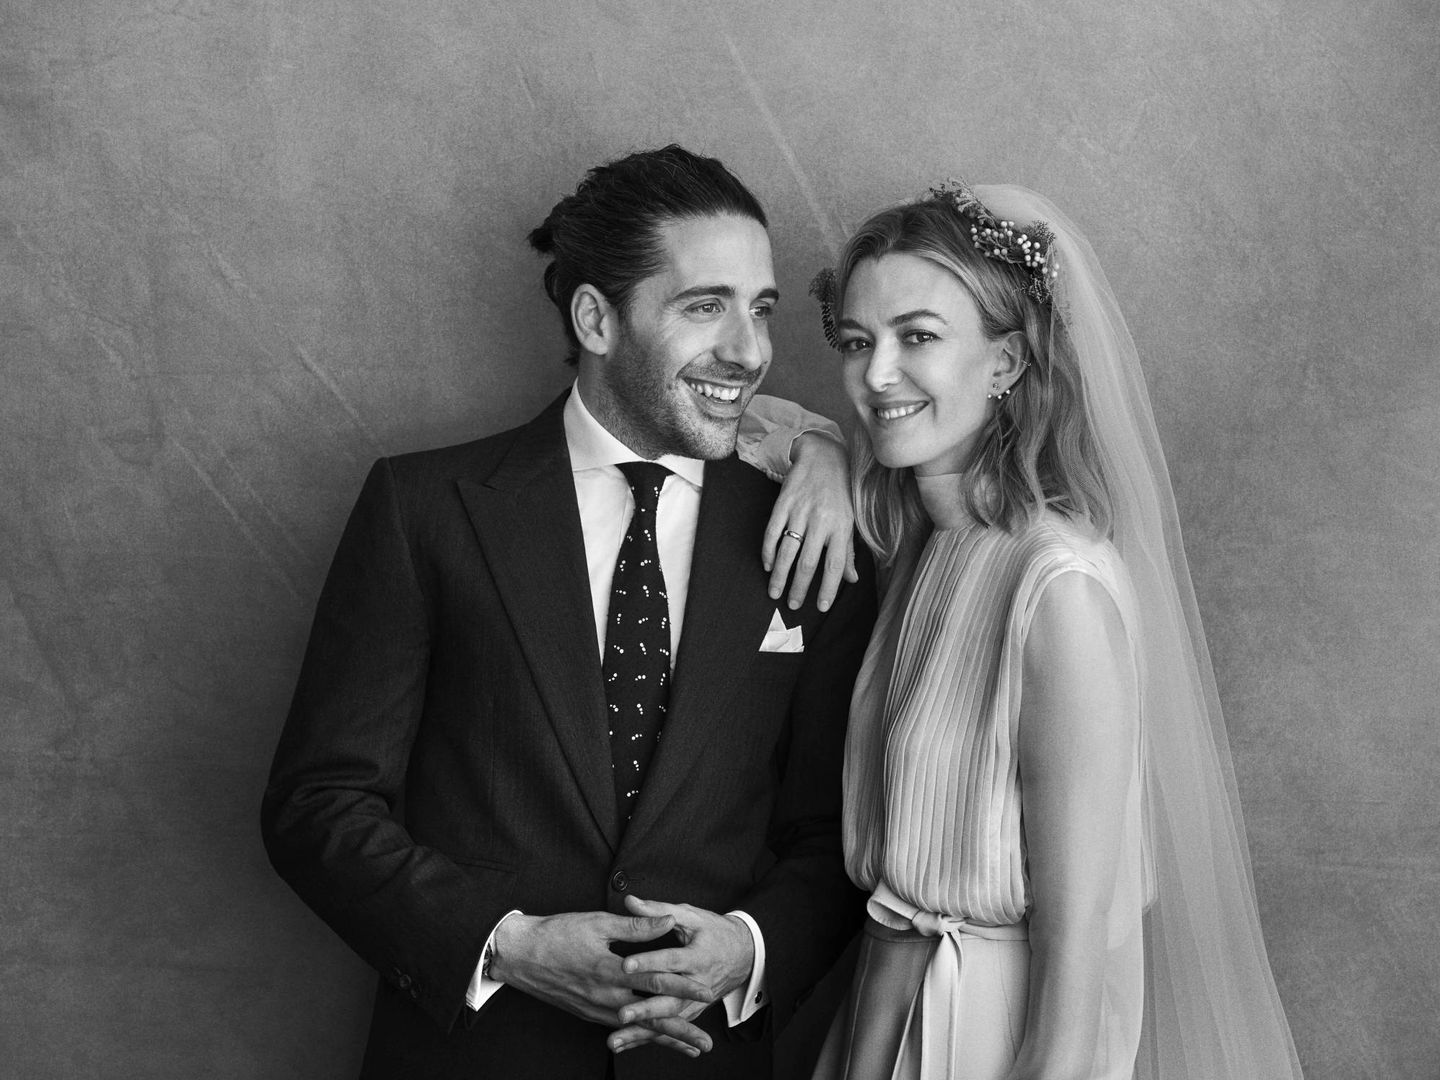 Carlos Torretta y Marta Ortega vestida de novia por Valentino y fotografiada por Peter Lindbergh.